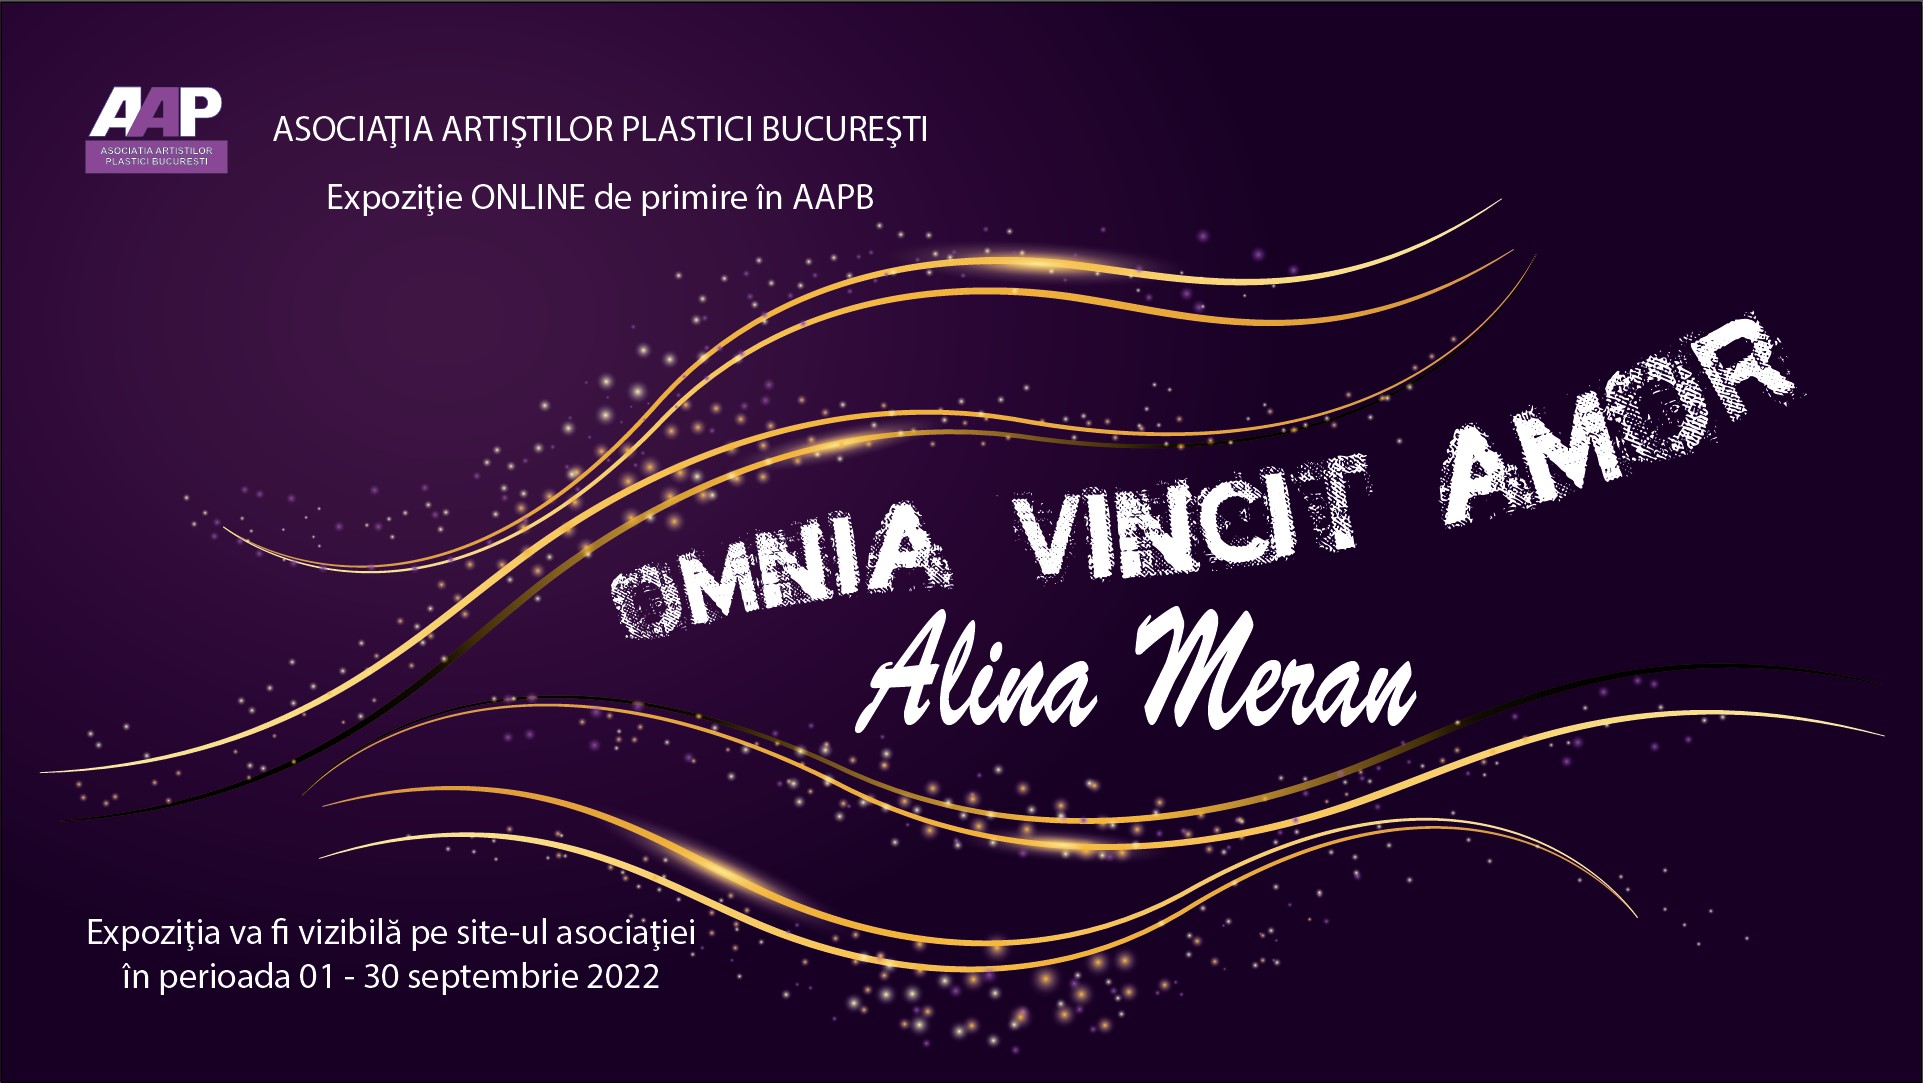 ALINA MERAN „OMNIA VINCIT AMOR” - expoziţie de primire în AAPB - (01 - 30 septembrie 2022) - ONLINE